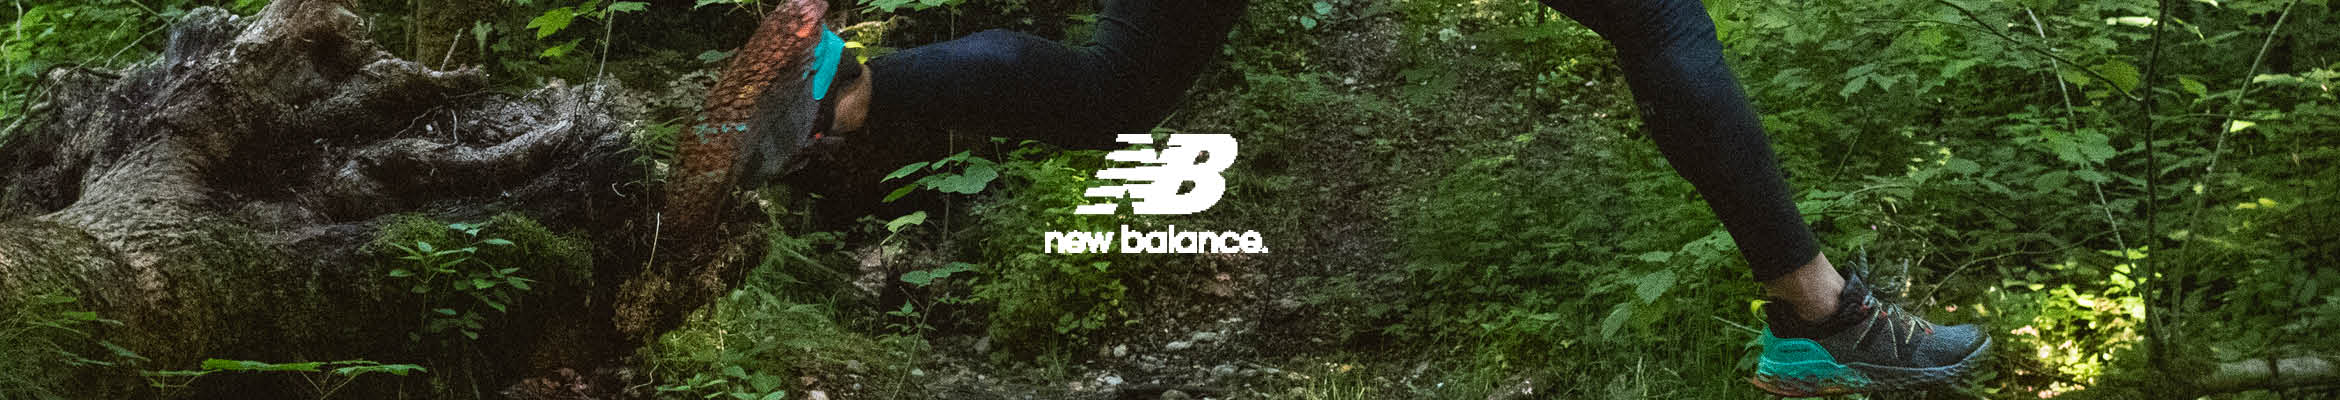 new balance ml619 zalando